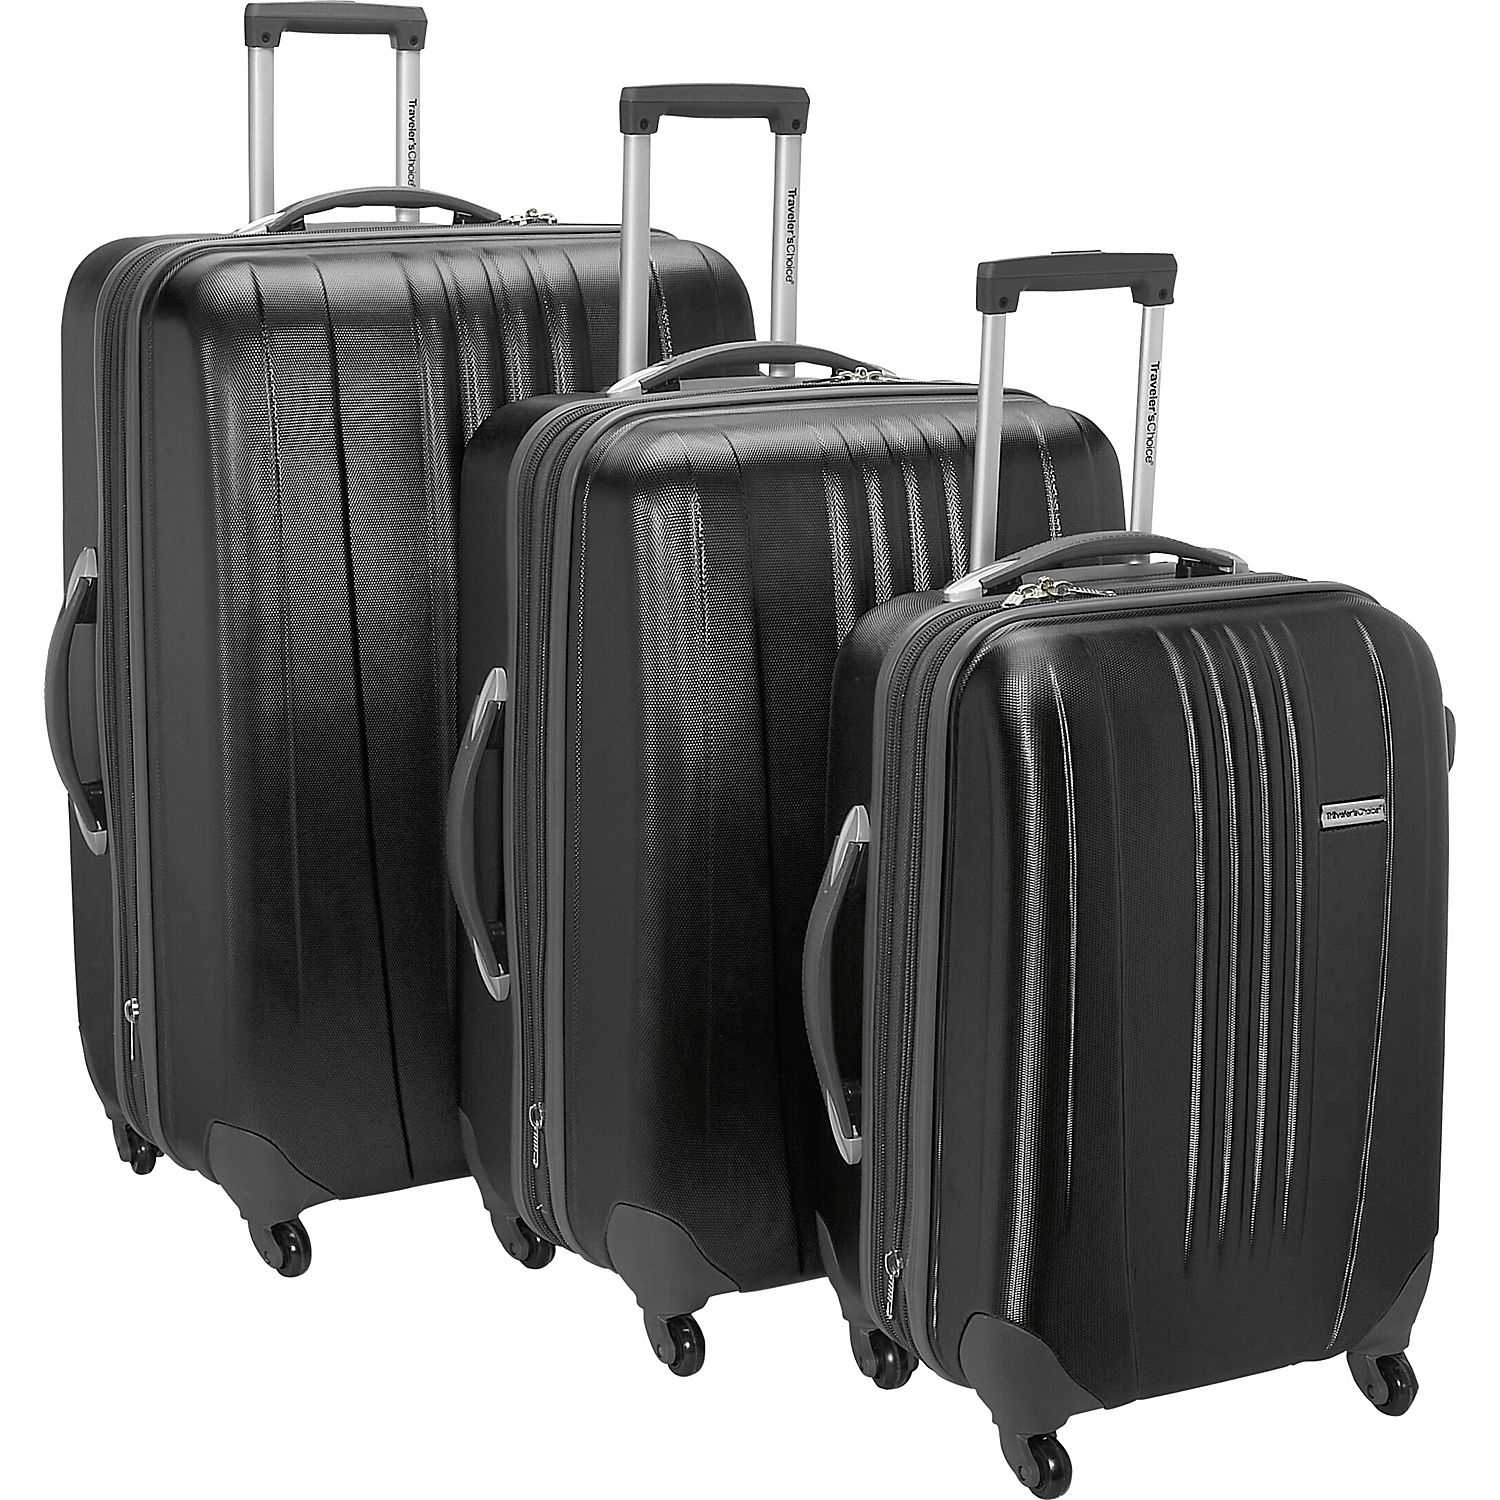 Как выбрать чемодан для поездок и авиаперелетов по 7 главным параметрам